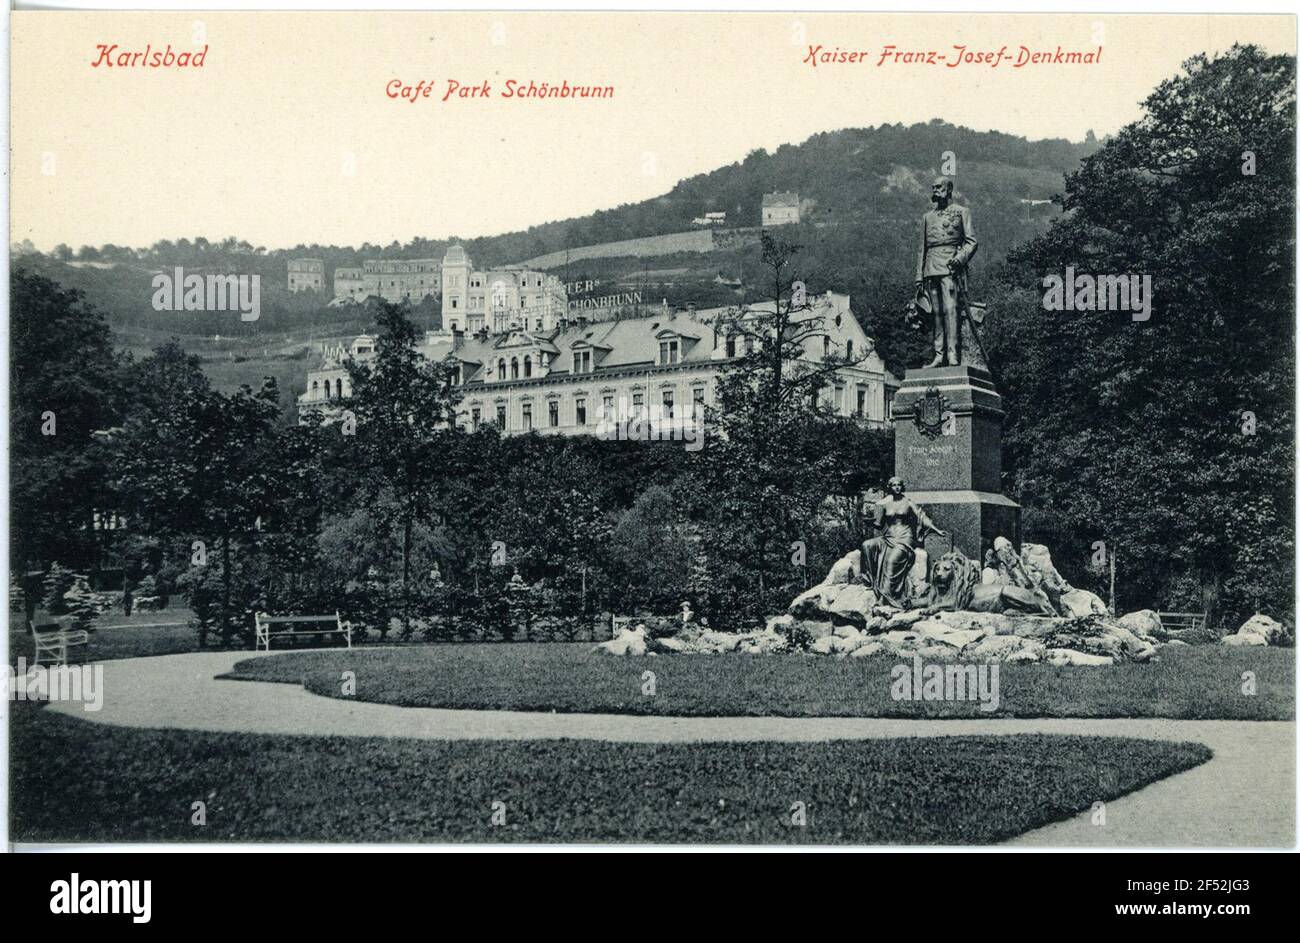 Kaiser-Franz-Josef-Memorial e Cafe Park Schönbrunn Carlsbad. Café 'Park Schönbrunn' e Kaiser-Franz-Josef monumento Foto Stock